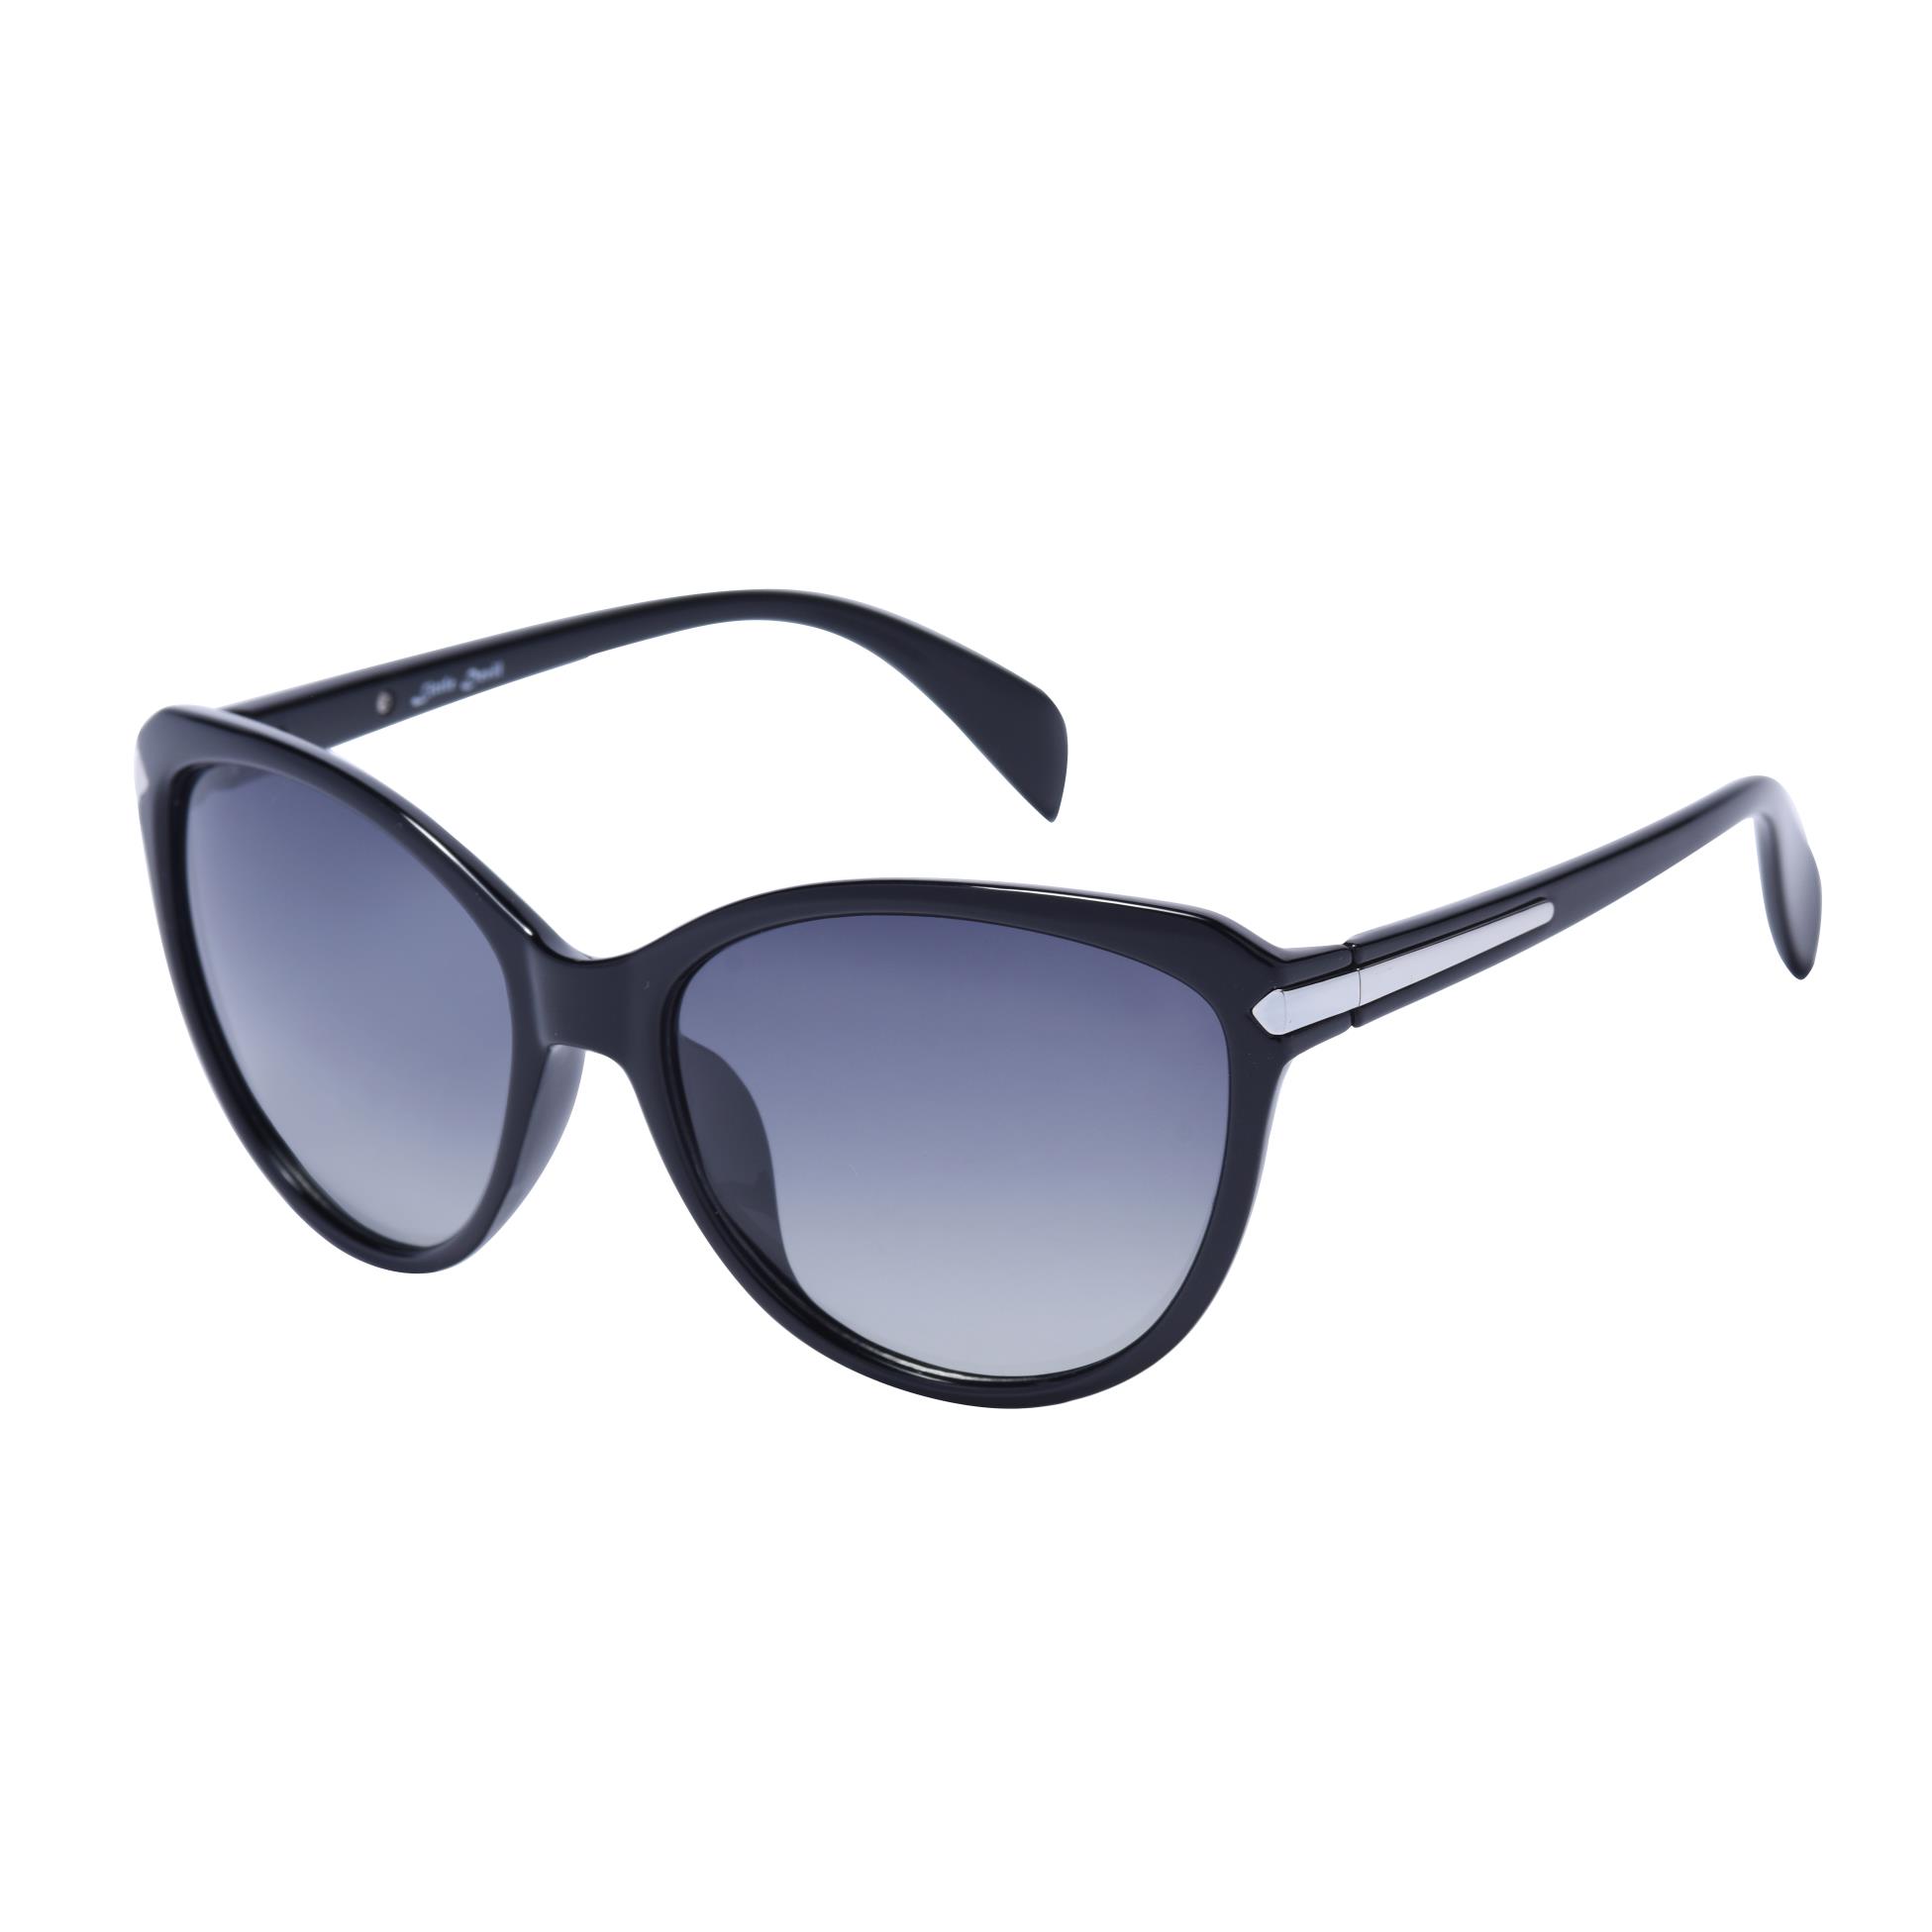 Kacamata hitam cateye wanita fashion 5505